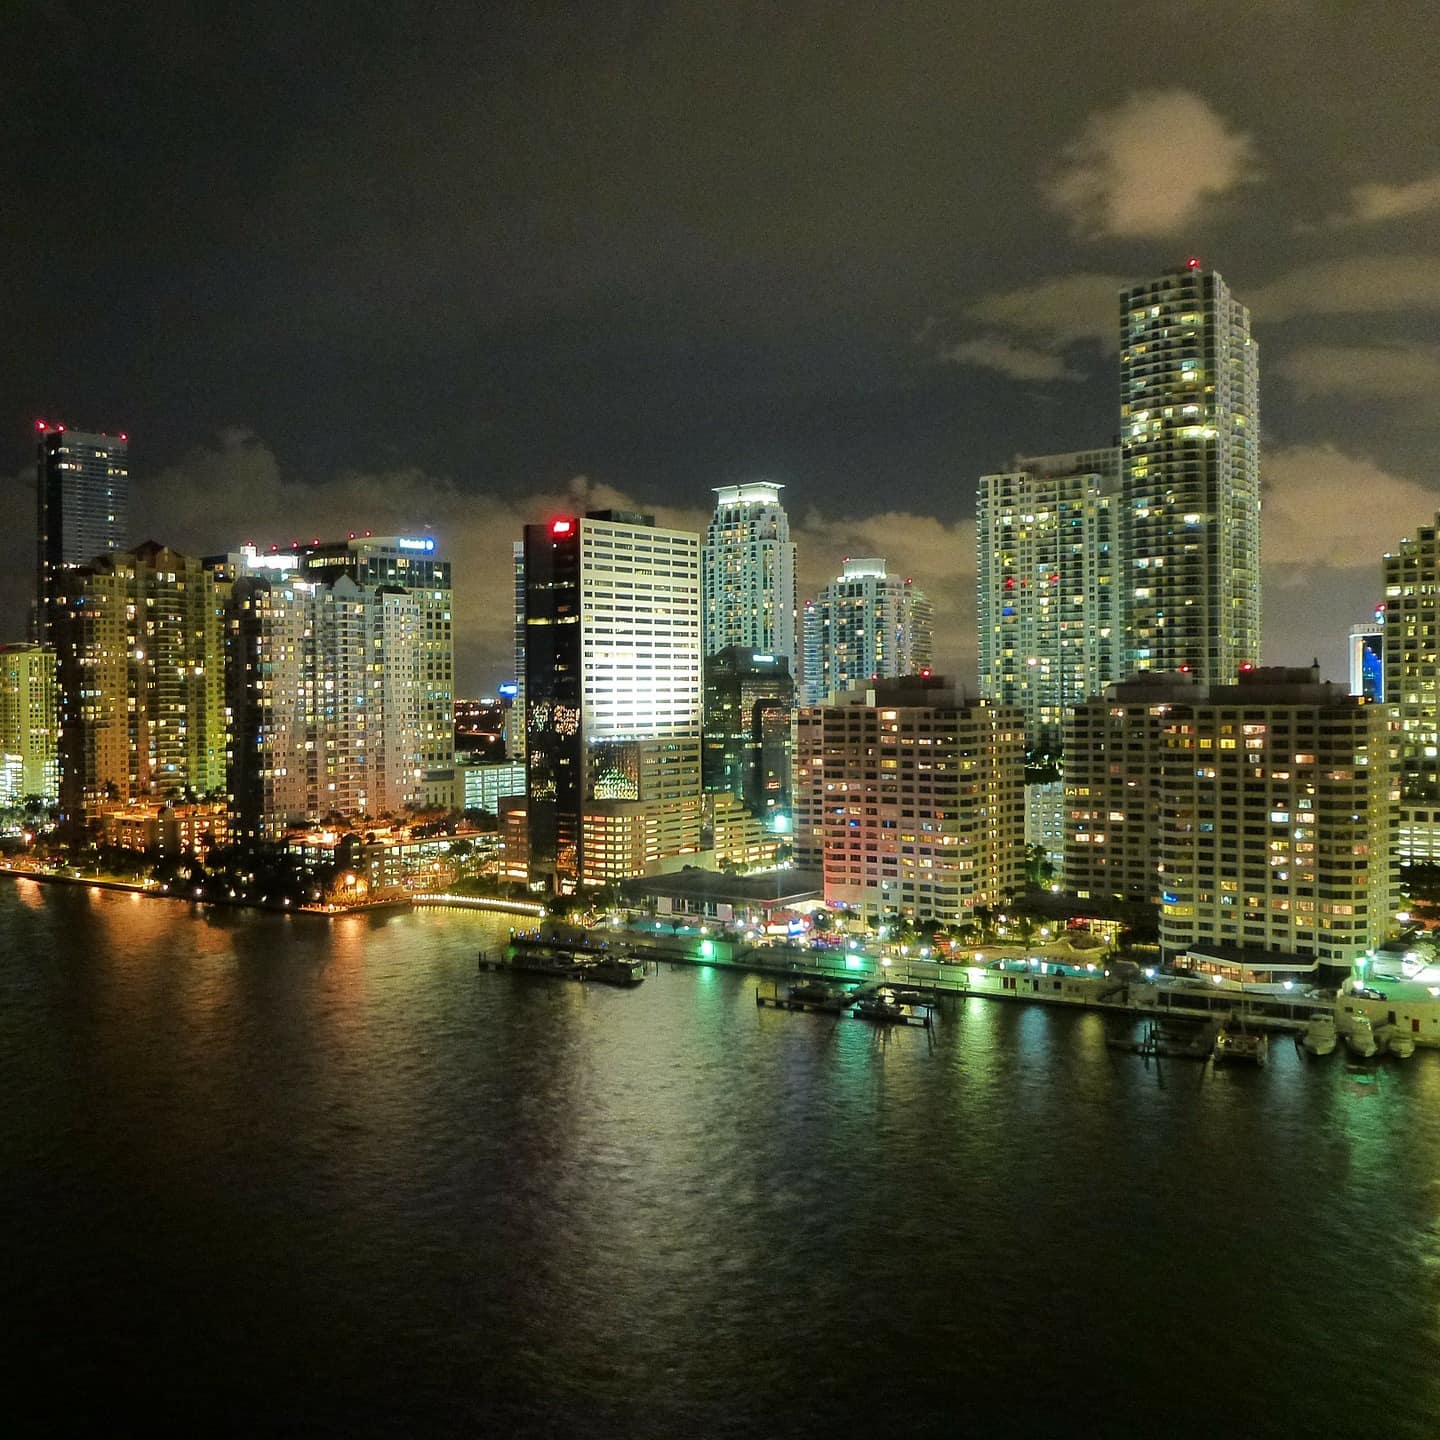 The Miami skyline at night